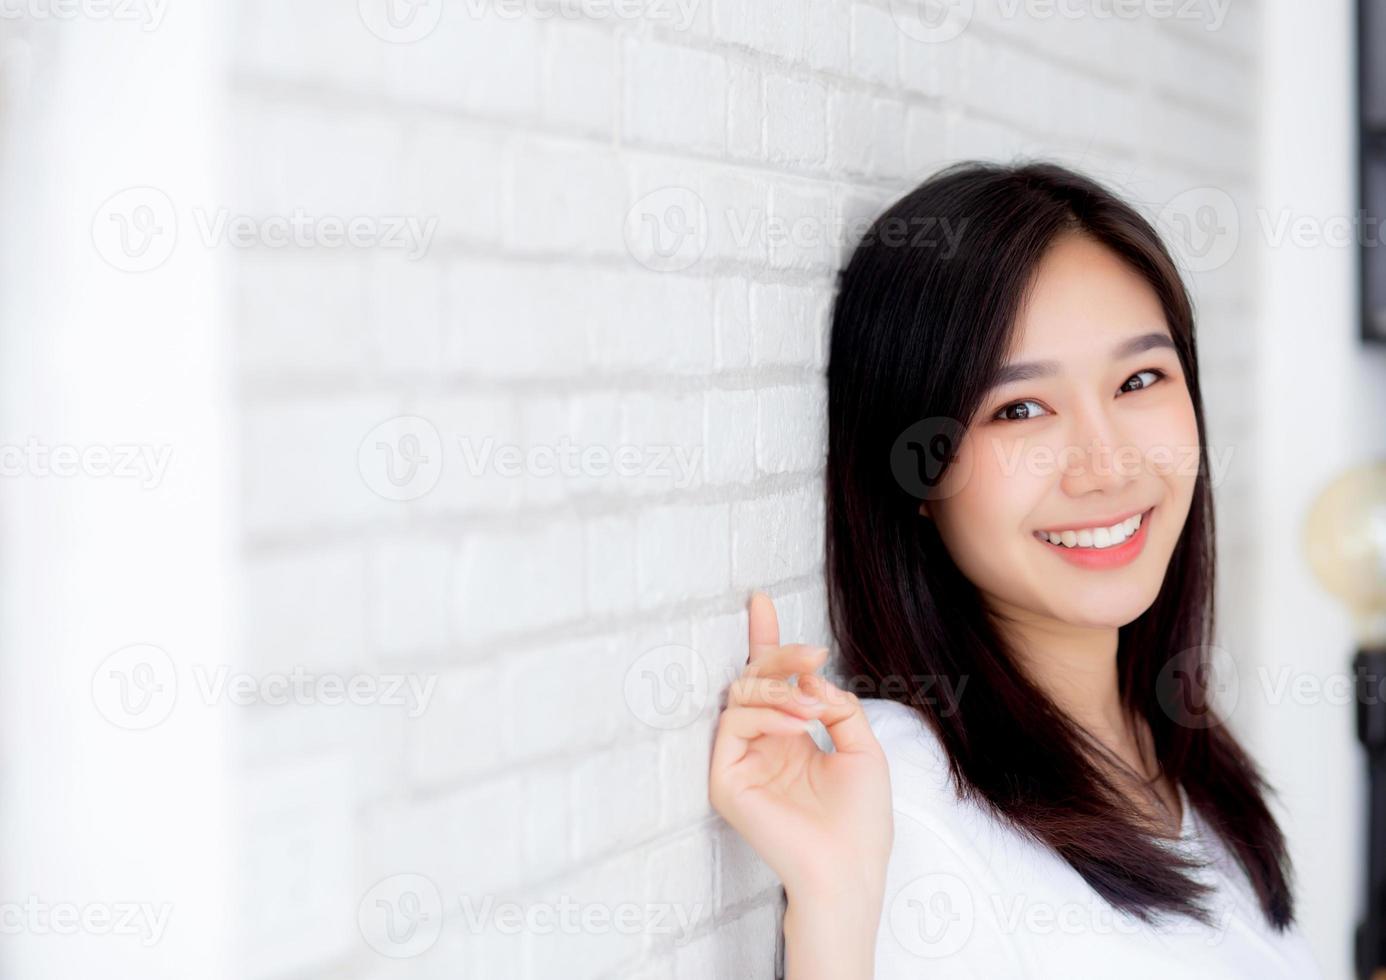 portret van mooie jonge Aziatische vrouw geluk staande op grijze cement textuur grunge muur baksteen achtergrond, zakenvrouw is een glimlach op beton, mensen uit het bedrijfsleven concept. foto